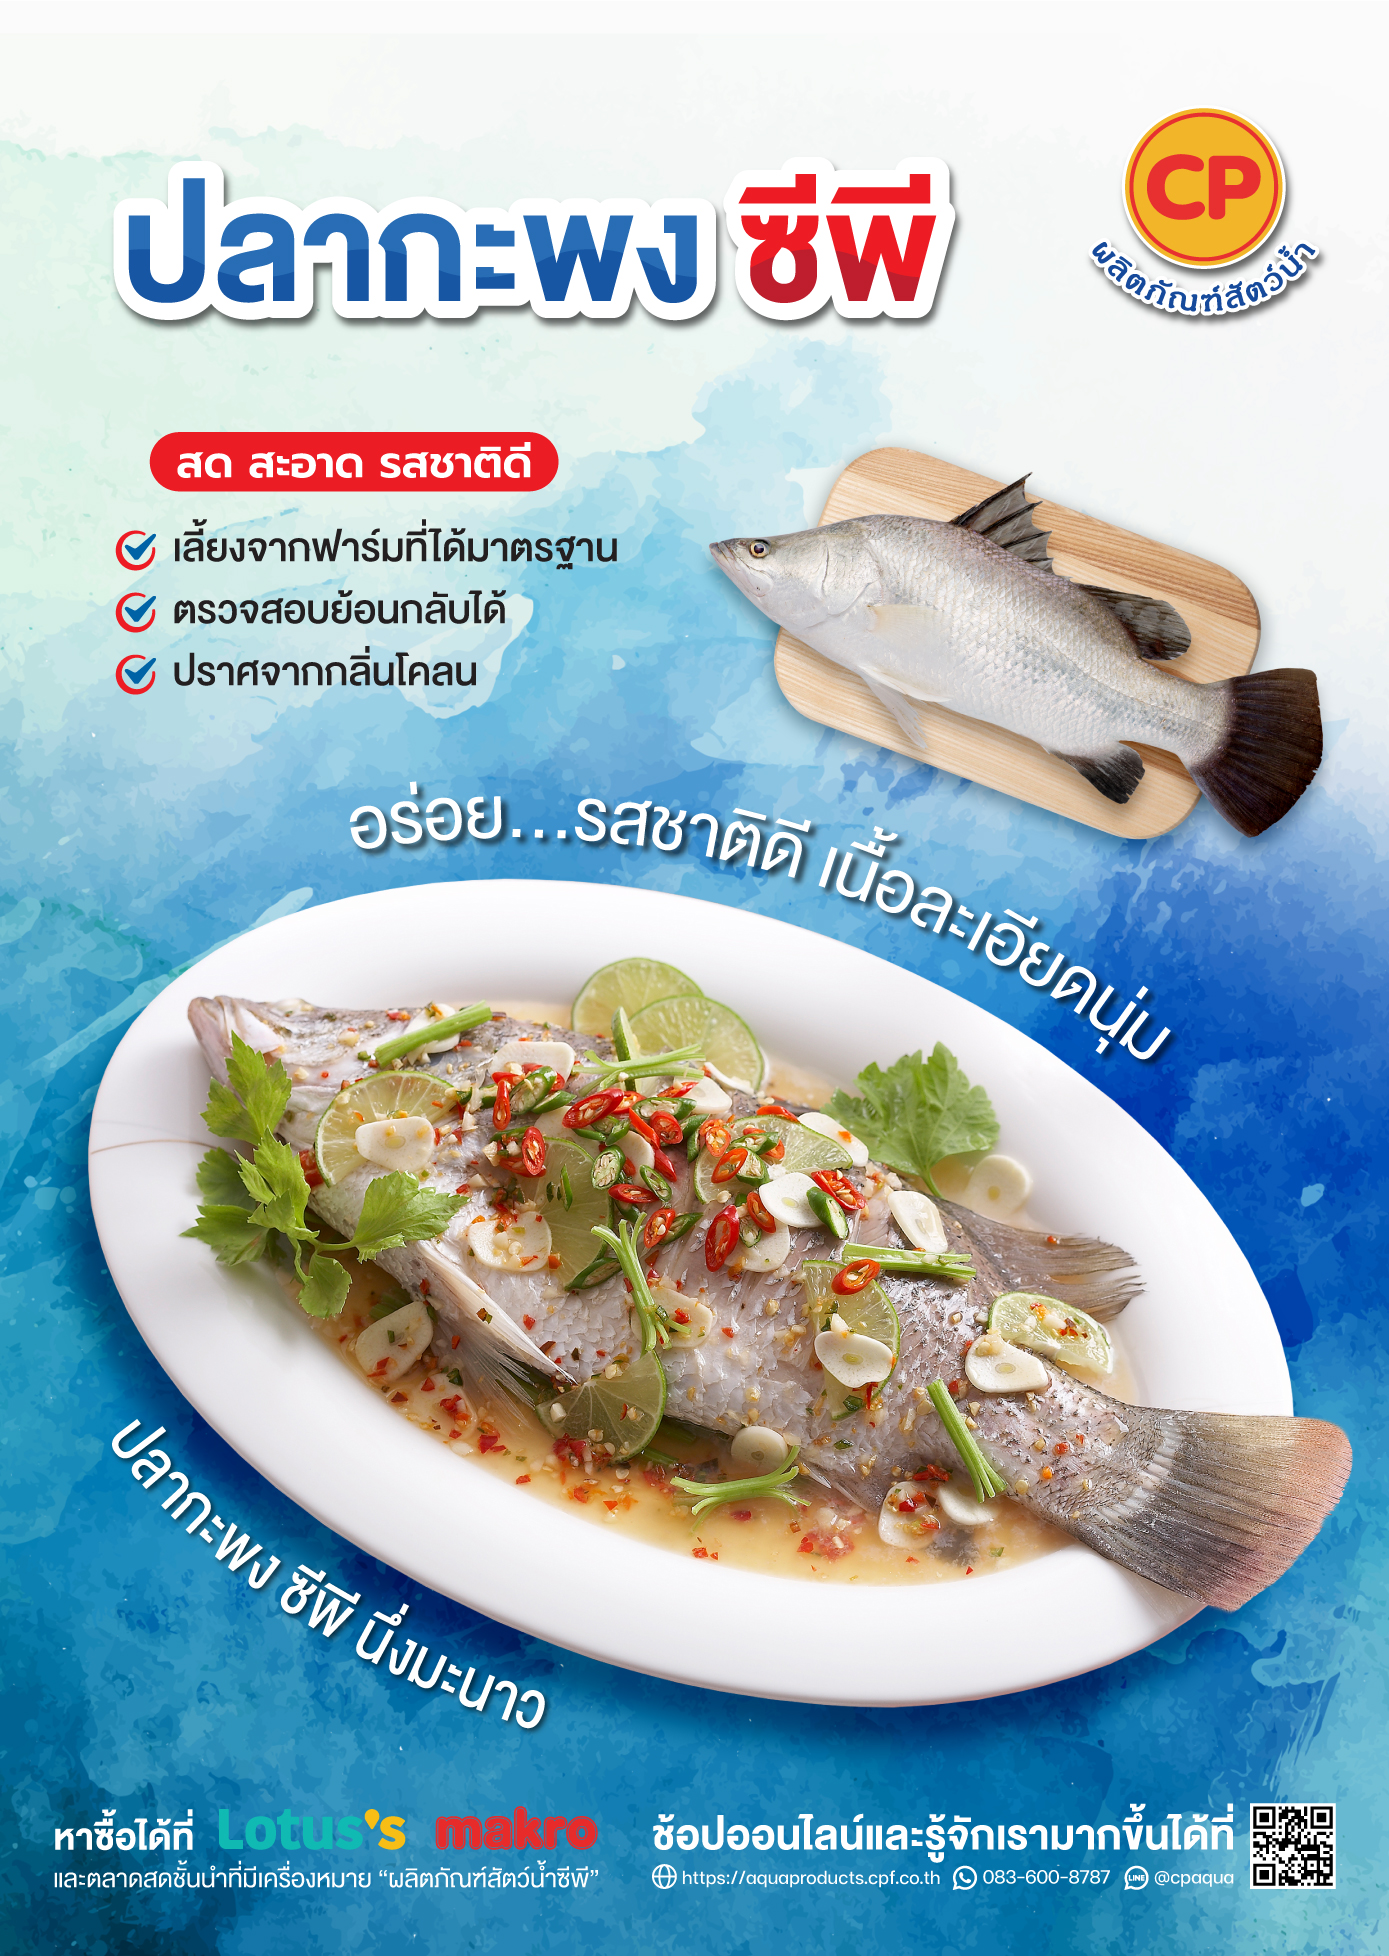 ผลิตภัณฑ์ “ปลากะพง ซีพี”  อร่อย...รสชาติดี เนื้อละเอียดนุ่ม